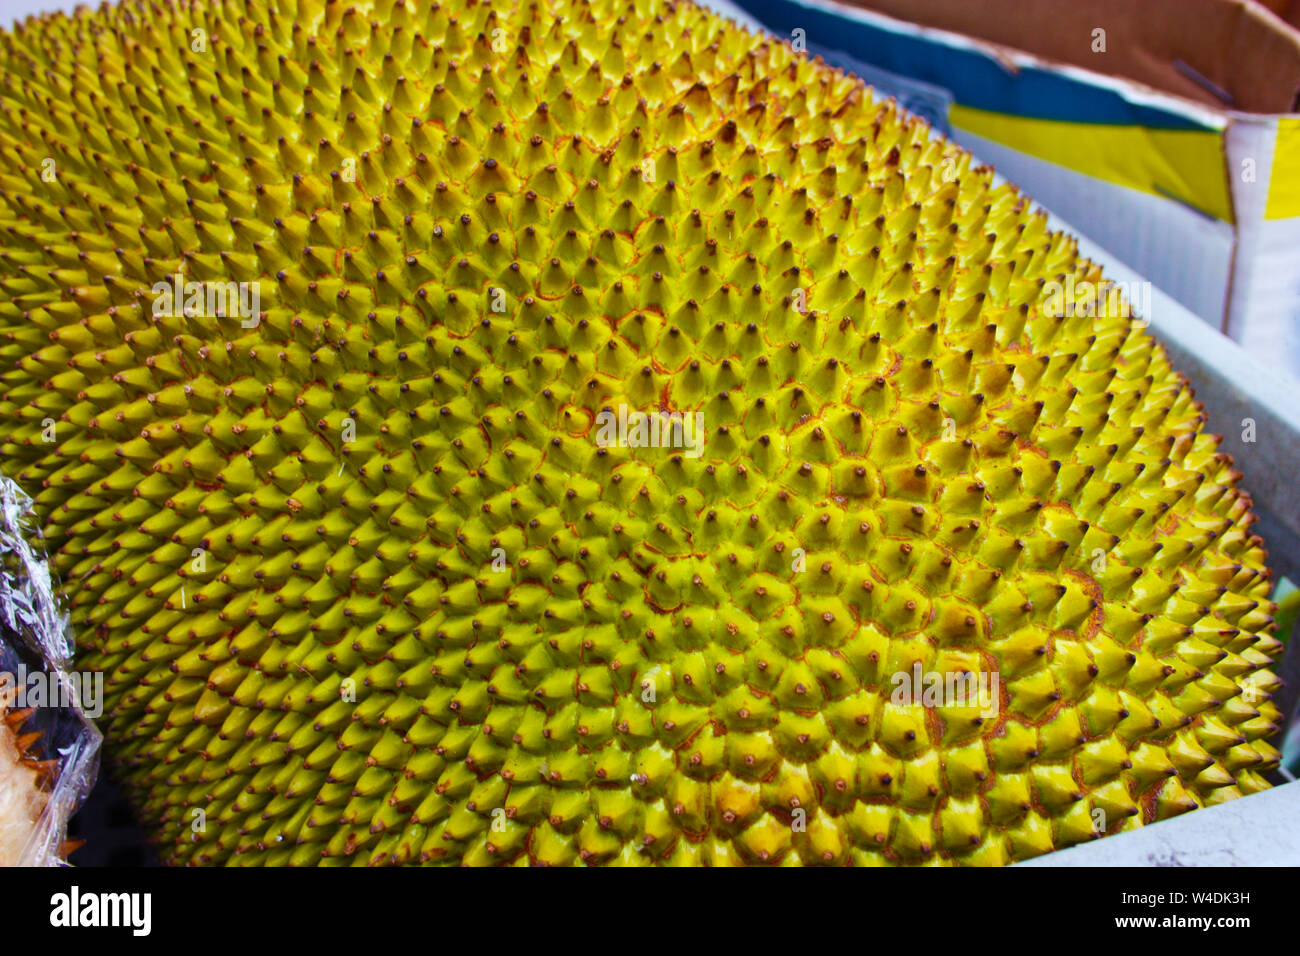 Durian, oder durione oder jackfruit. Große Exotische grüne und gelbe Früchte mit Spikes, die übelriechenden Obst. smelly food. Stockfoto